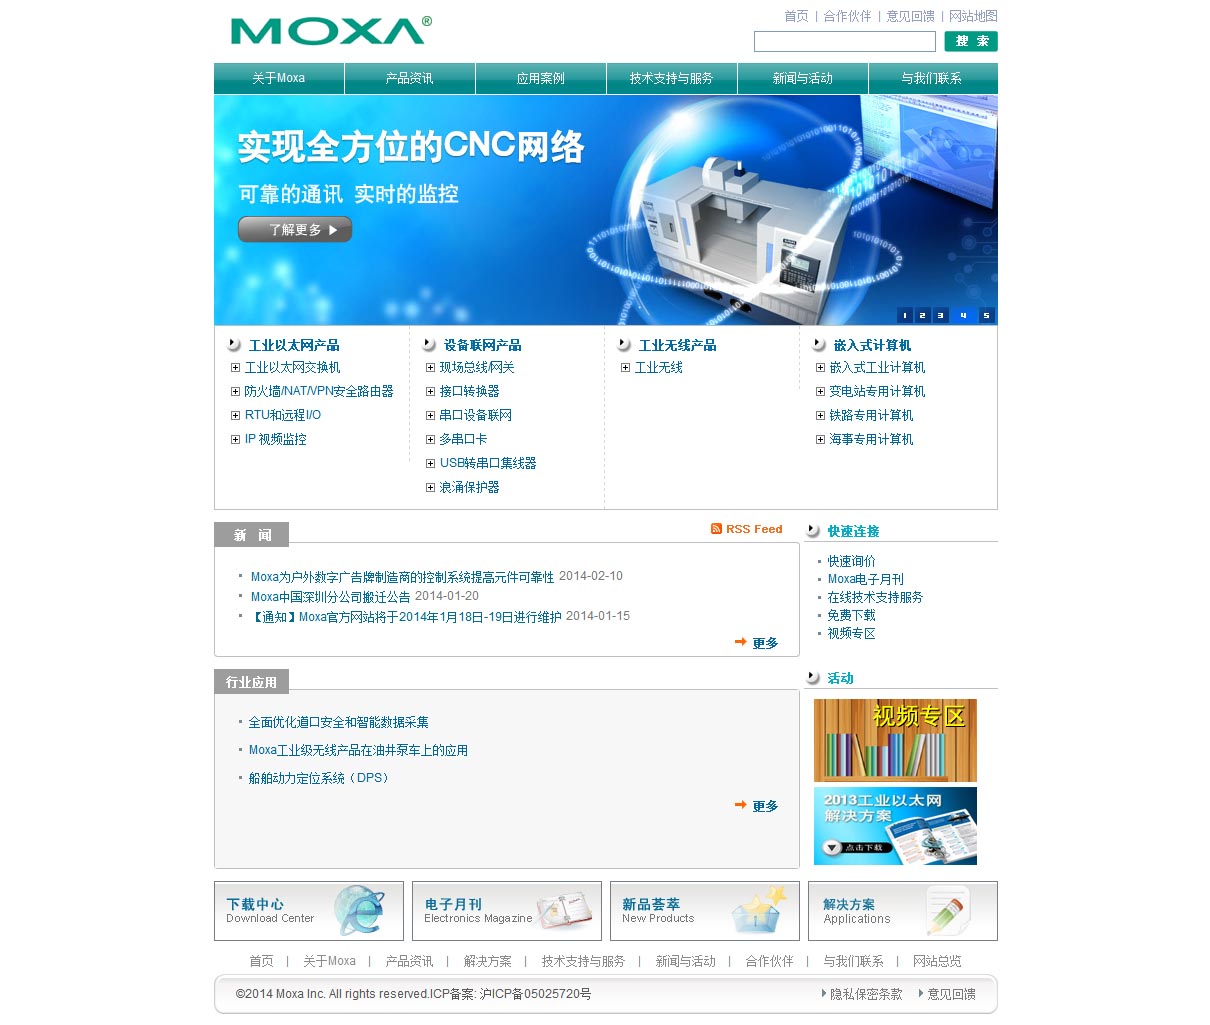 摩莎国际贸易(上海)有限公司的网站